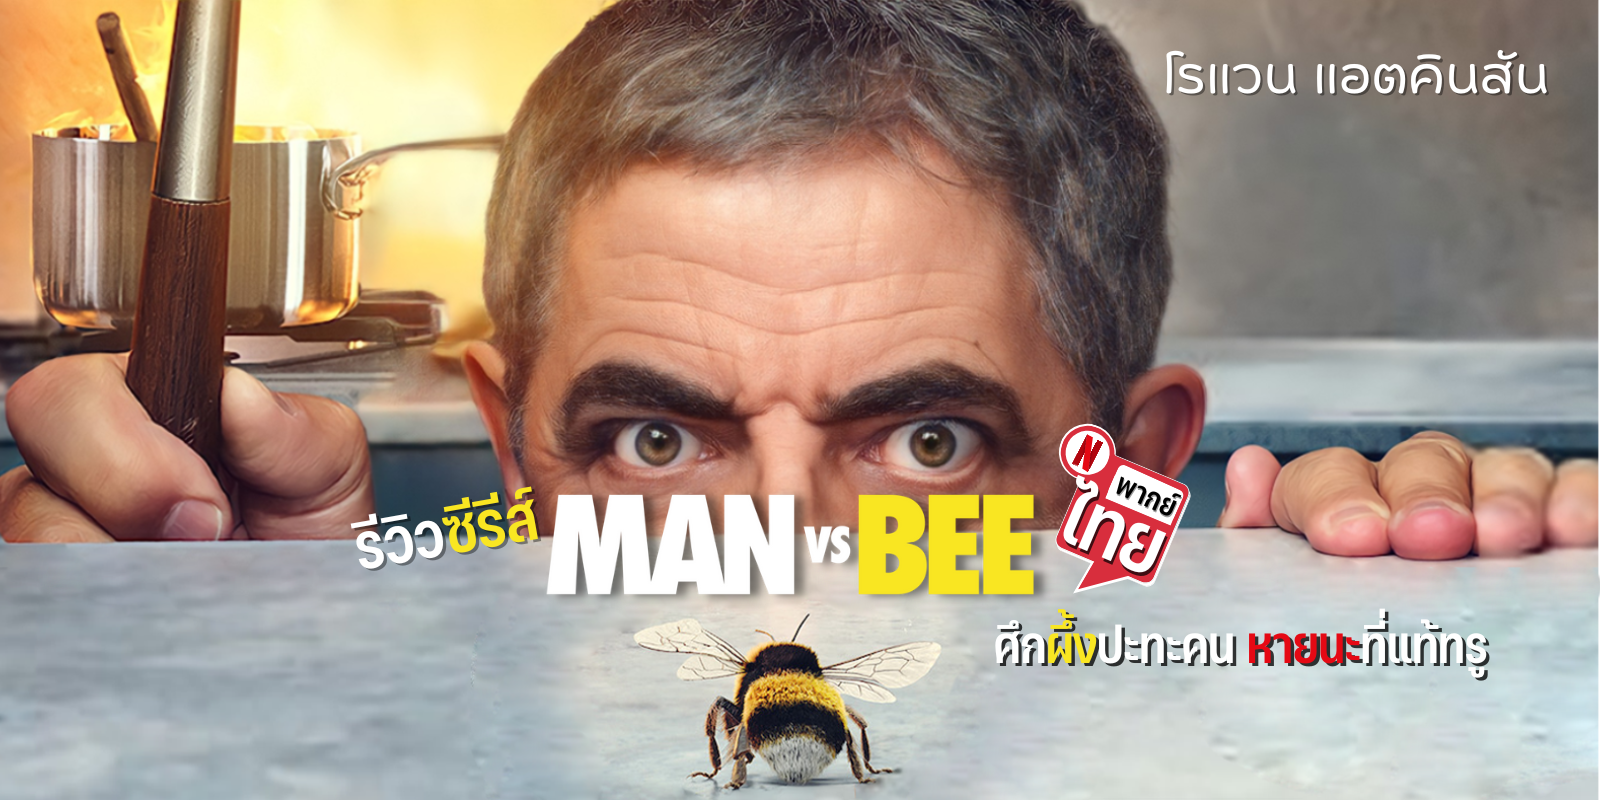 Man Vs Bee ซีรีส์ผลงานล่าสุดของโรแวน แอตคินสัน หรือ Mr. Bean ที่หลายคนรอคอย ออกอากาศให้รับชมทาง Netflix แล้วจ้า เรื่องของคนเฝ้าบ้านกับผึ้งจอมป่วน ป่วนไปป่วนมา ทำหาชิปไม่เจอเลยล่ะ 😱 แหม! 🤣 สงครามครั้